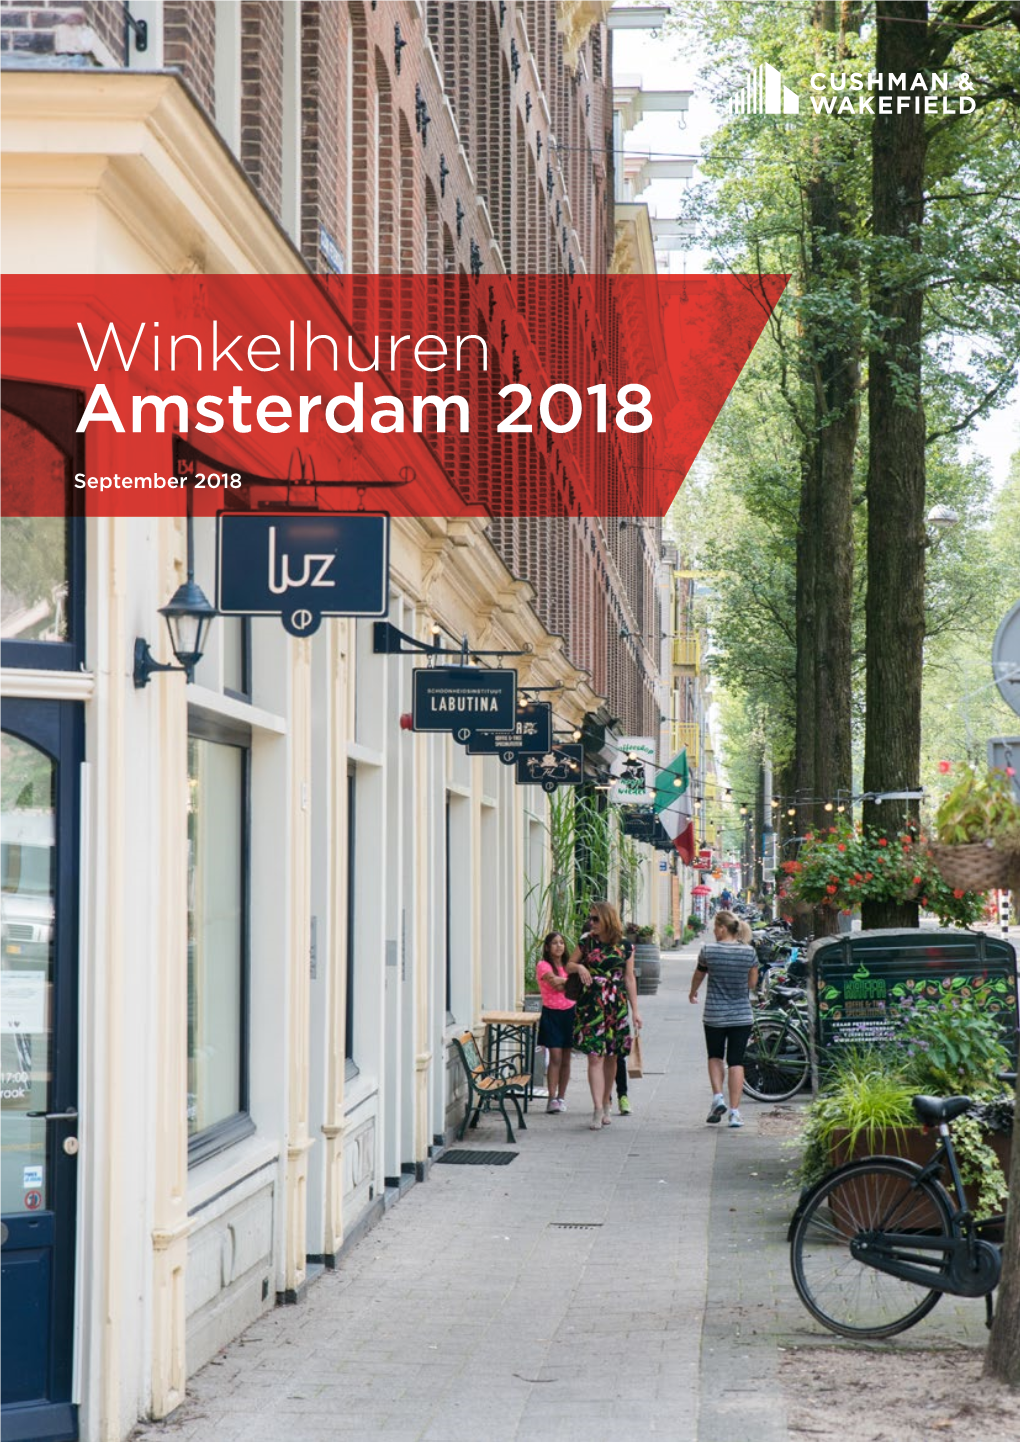 Winkelhuren Amsterdam 2018 1